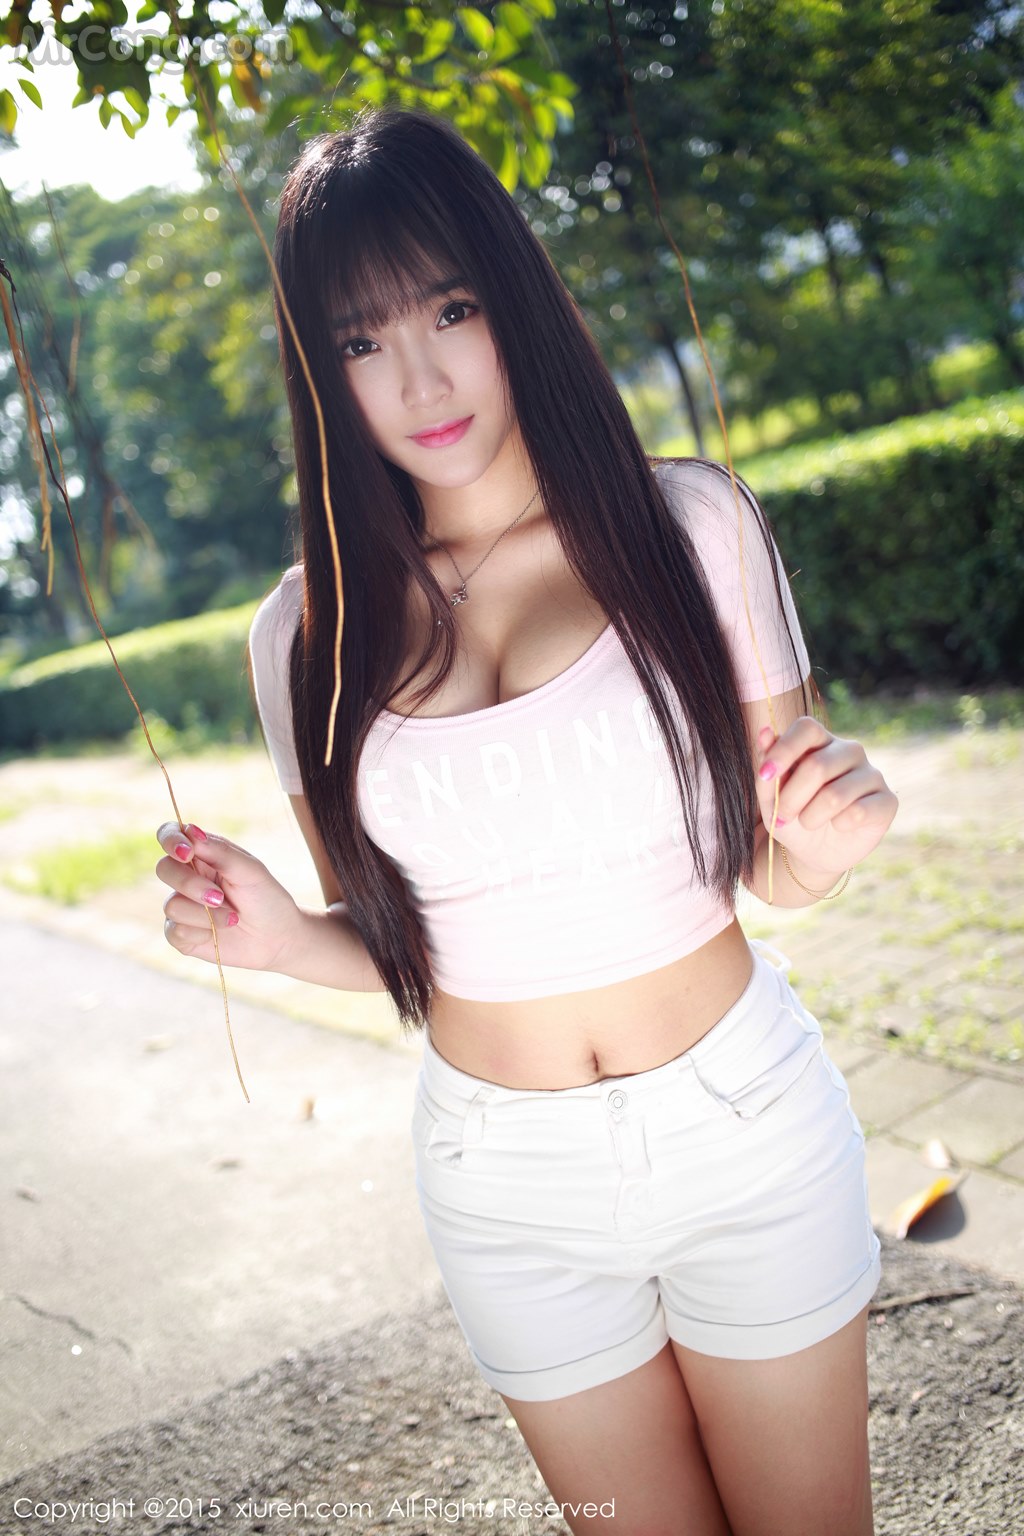 XIUREN No.345: Model Xia Yao baby (夏 瑶 baby) (43 pictures)